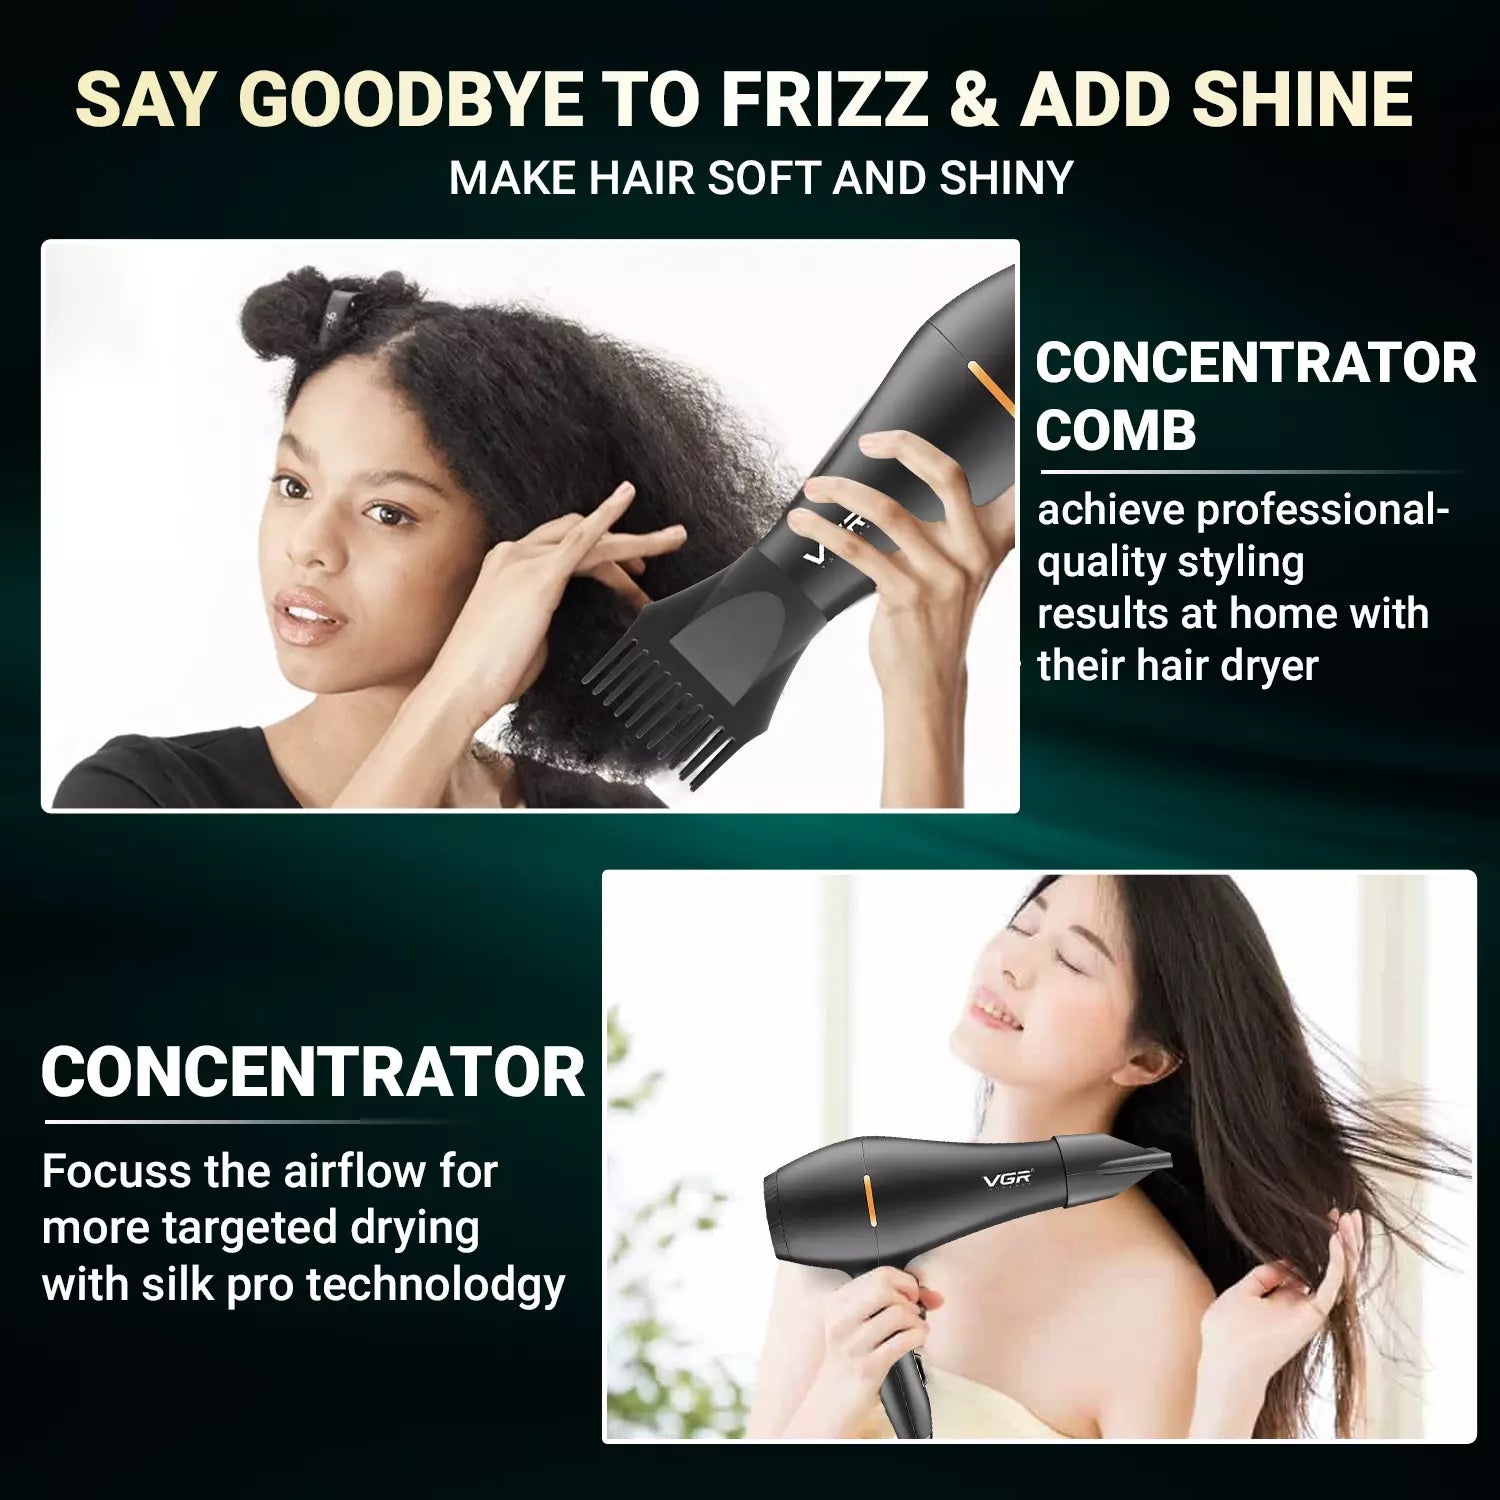 VGR V-433 Hair Dryer For Women, Black